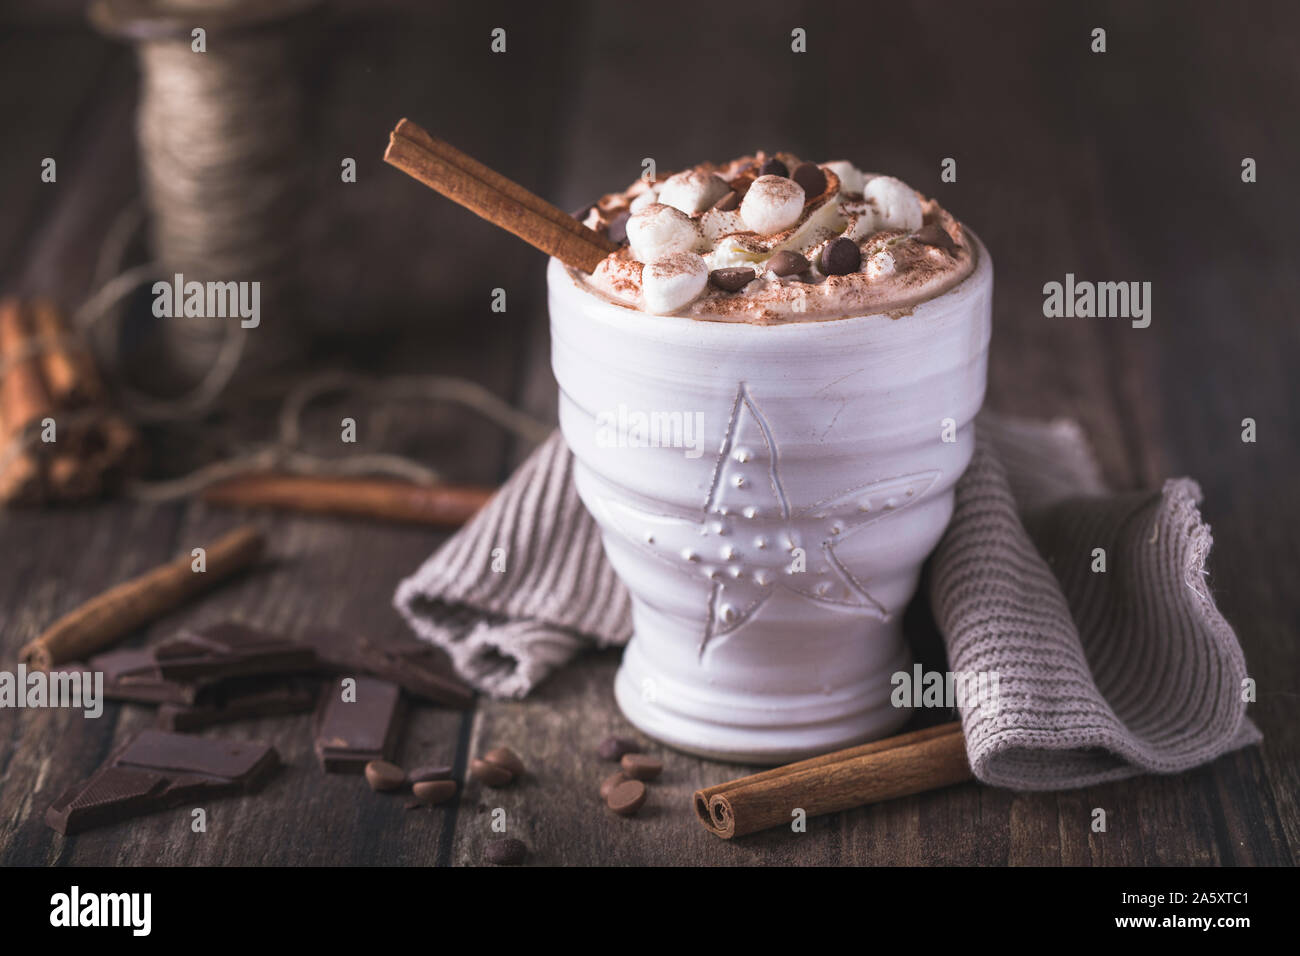 Eine weiße Tasse mit luxuriösen Heiße Schokolade mit Sahne und Stücke von Marshmallows und Chocolate Chips. Stücke Schokolade sind rund um o verstreut Stockfoto